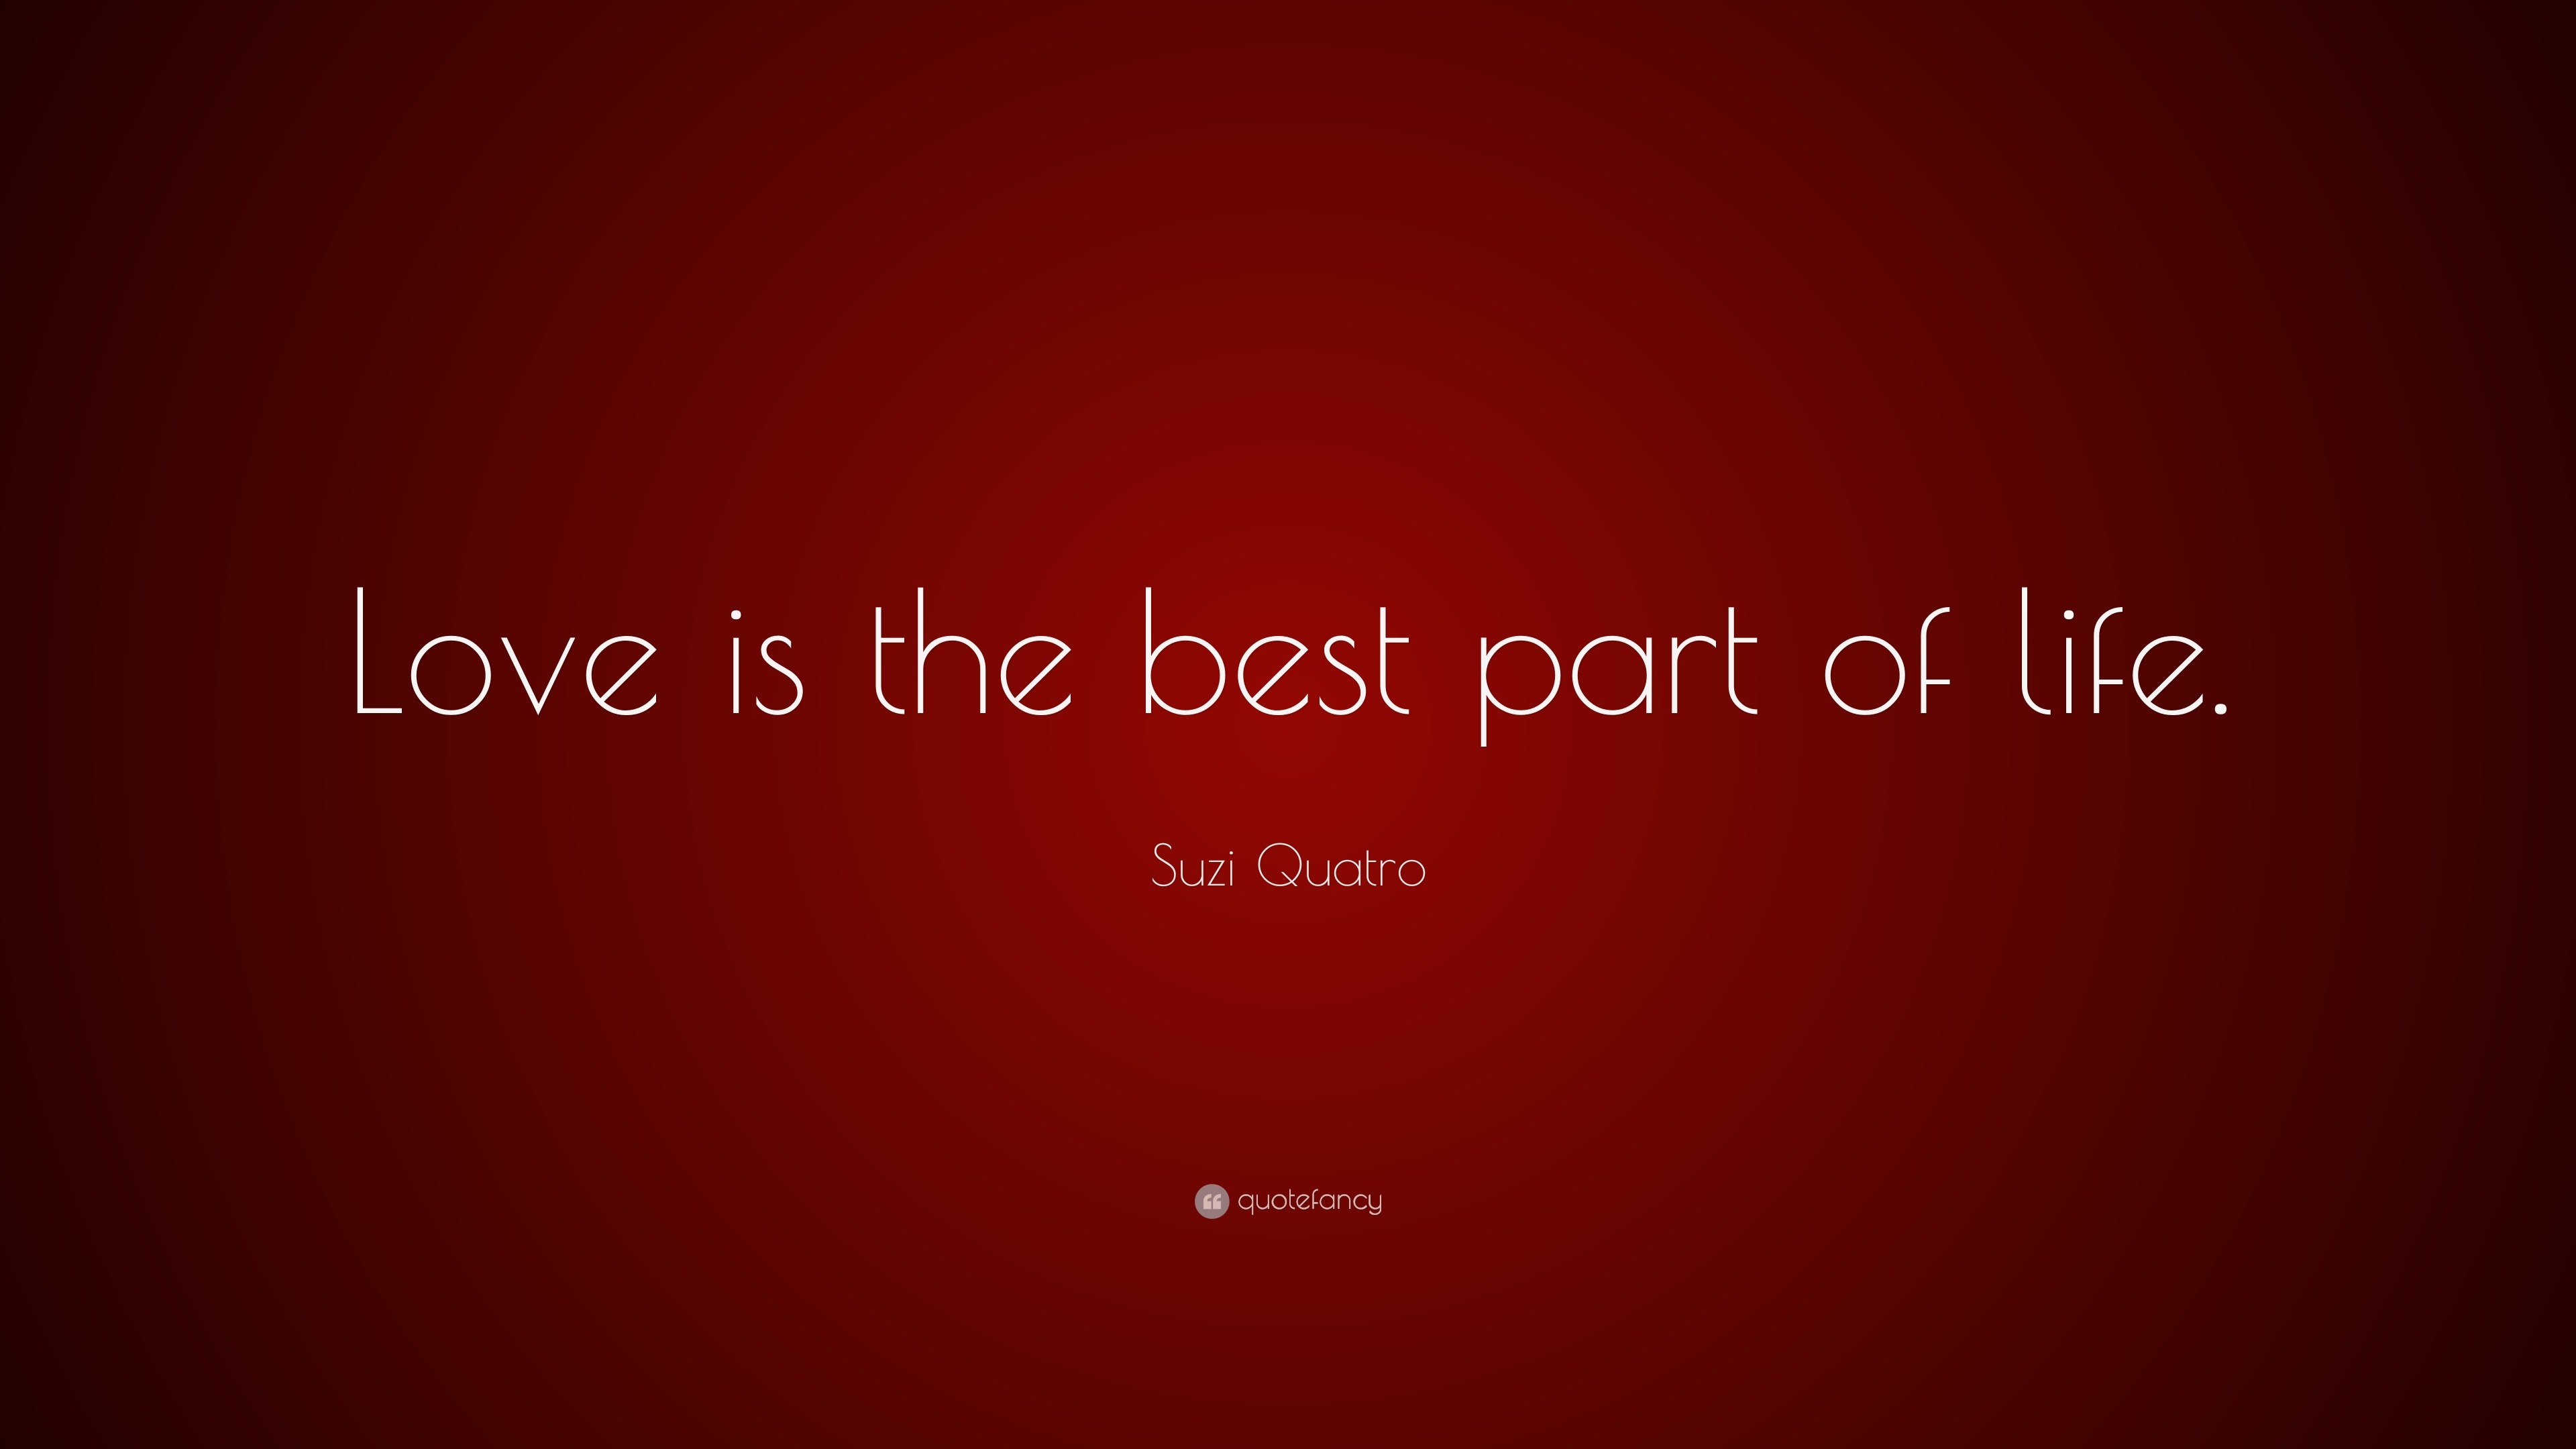 Suzi Quatro Quote “Love is the best part of life ”